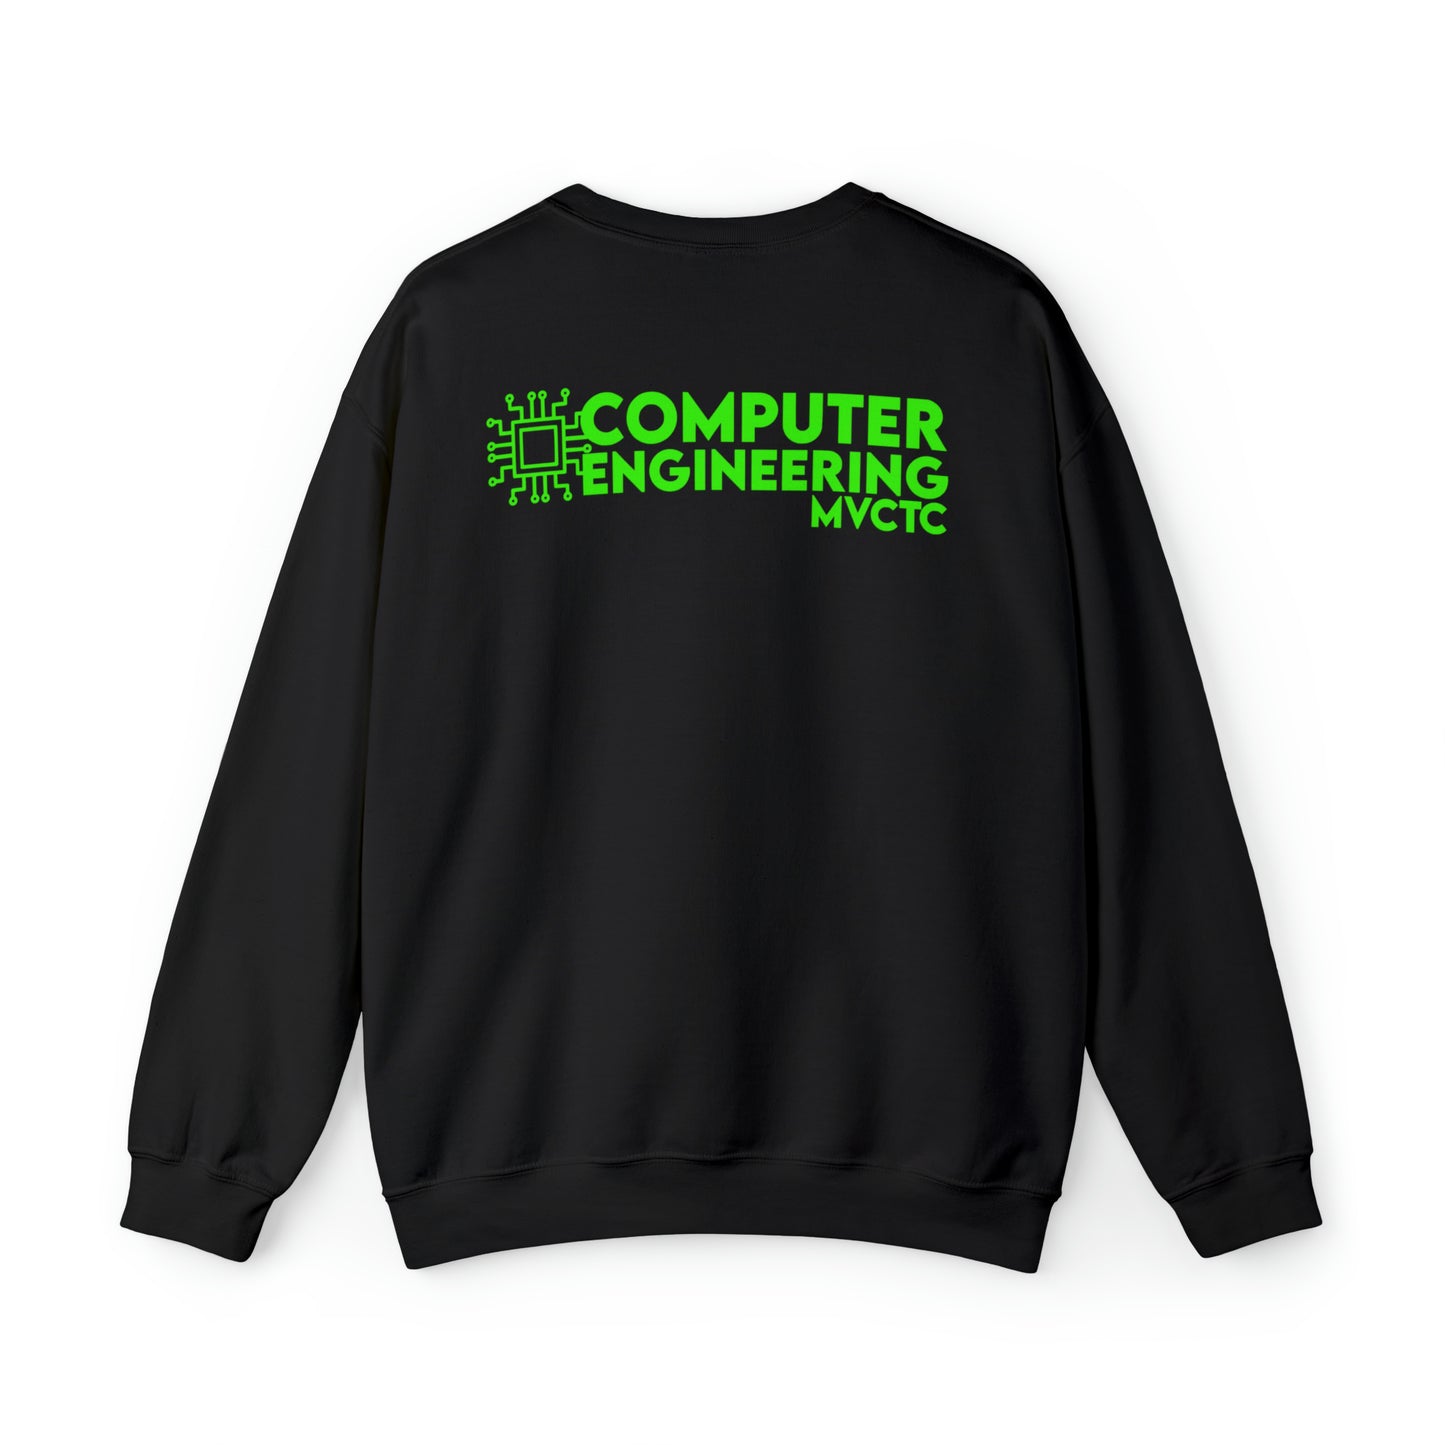 MVCTC- Computer Sweatshirt